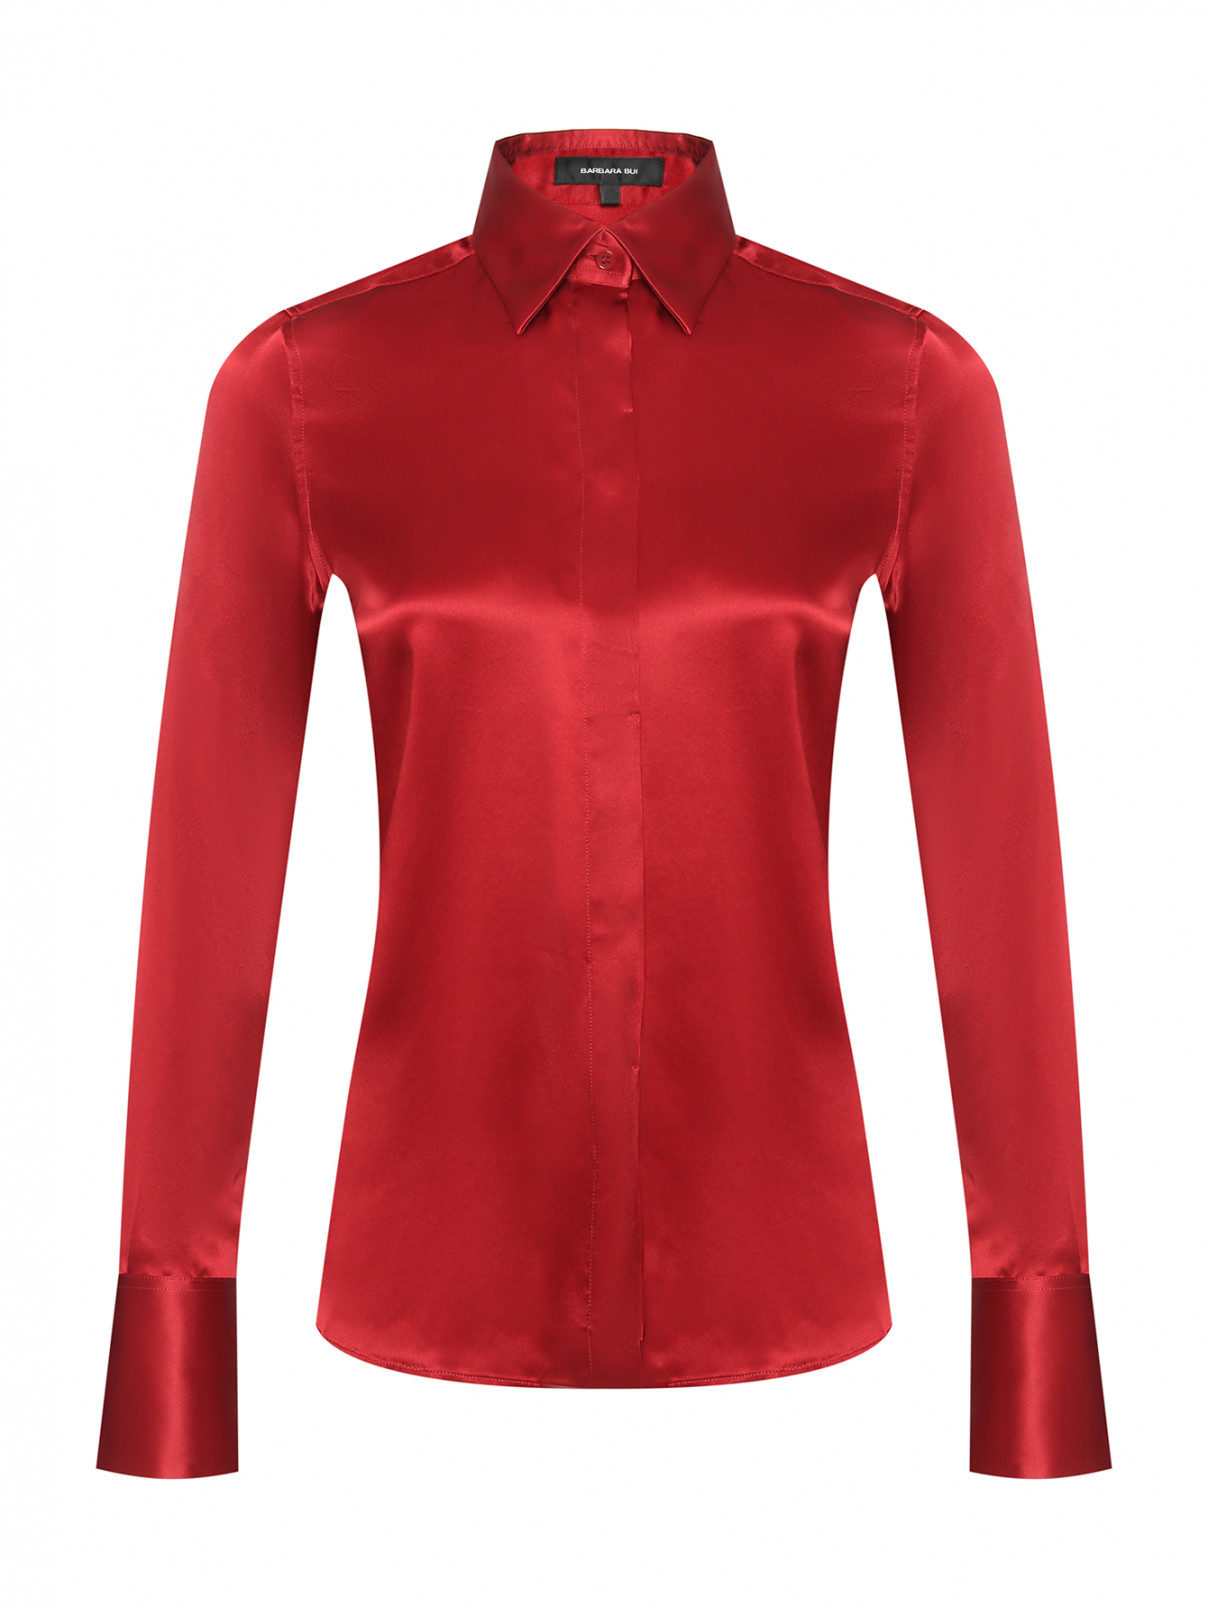 Однотонная блузка из шелка Barbara Bui  –  Общий вид  – Цвет:  Красный